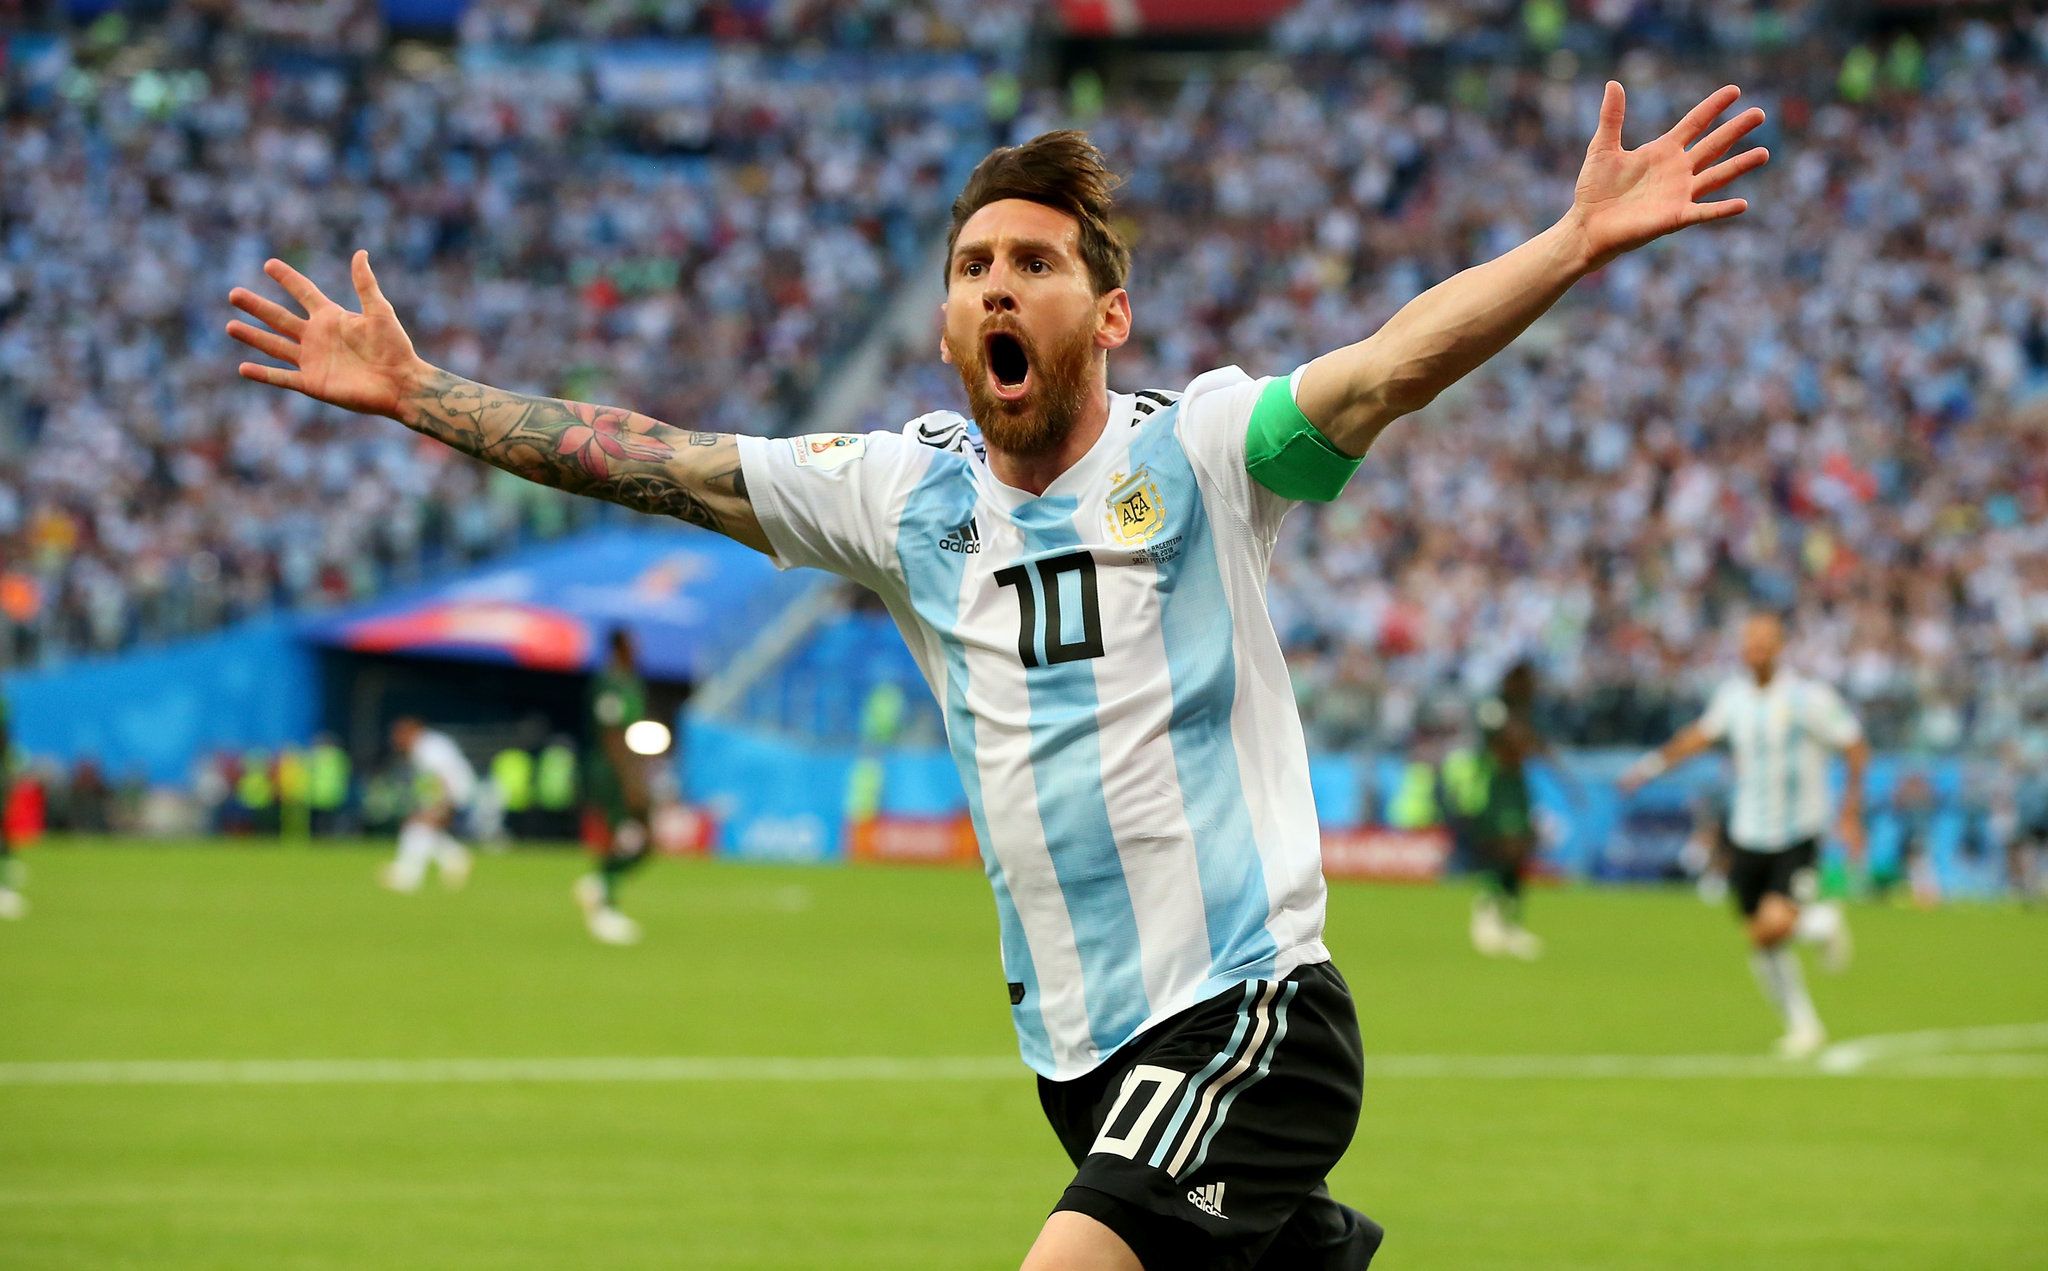 Amid Argentina's Drama, Lionel Messi's Brilliance Emerges